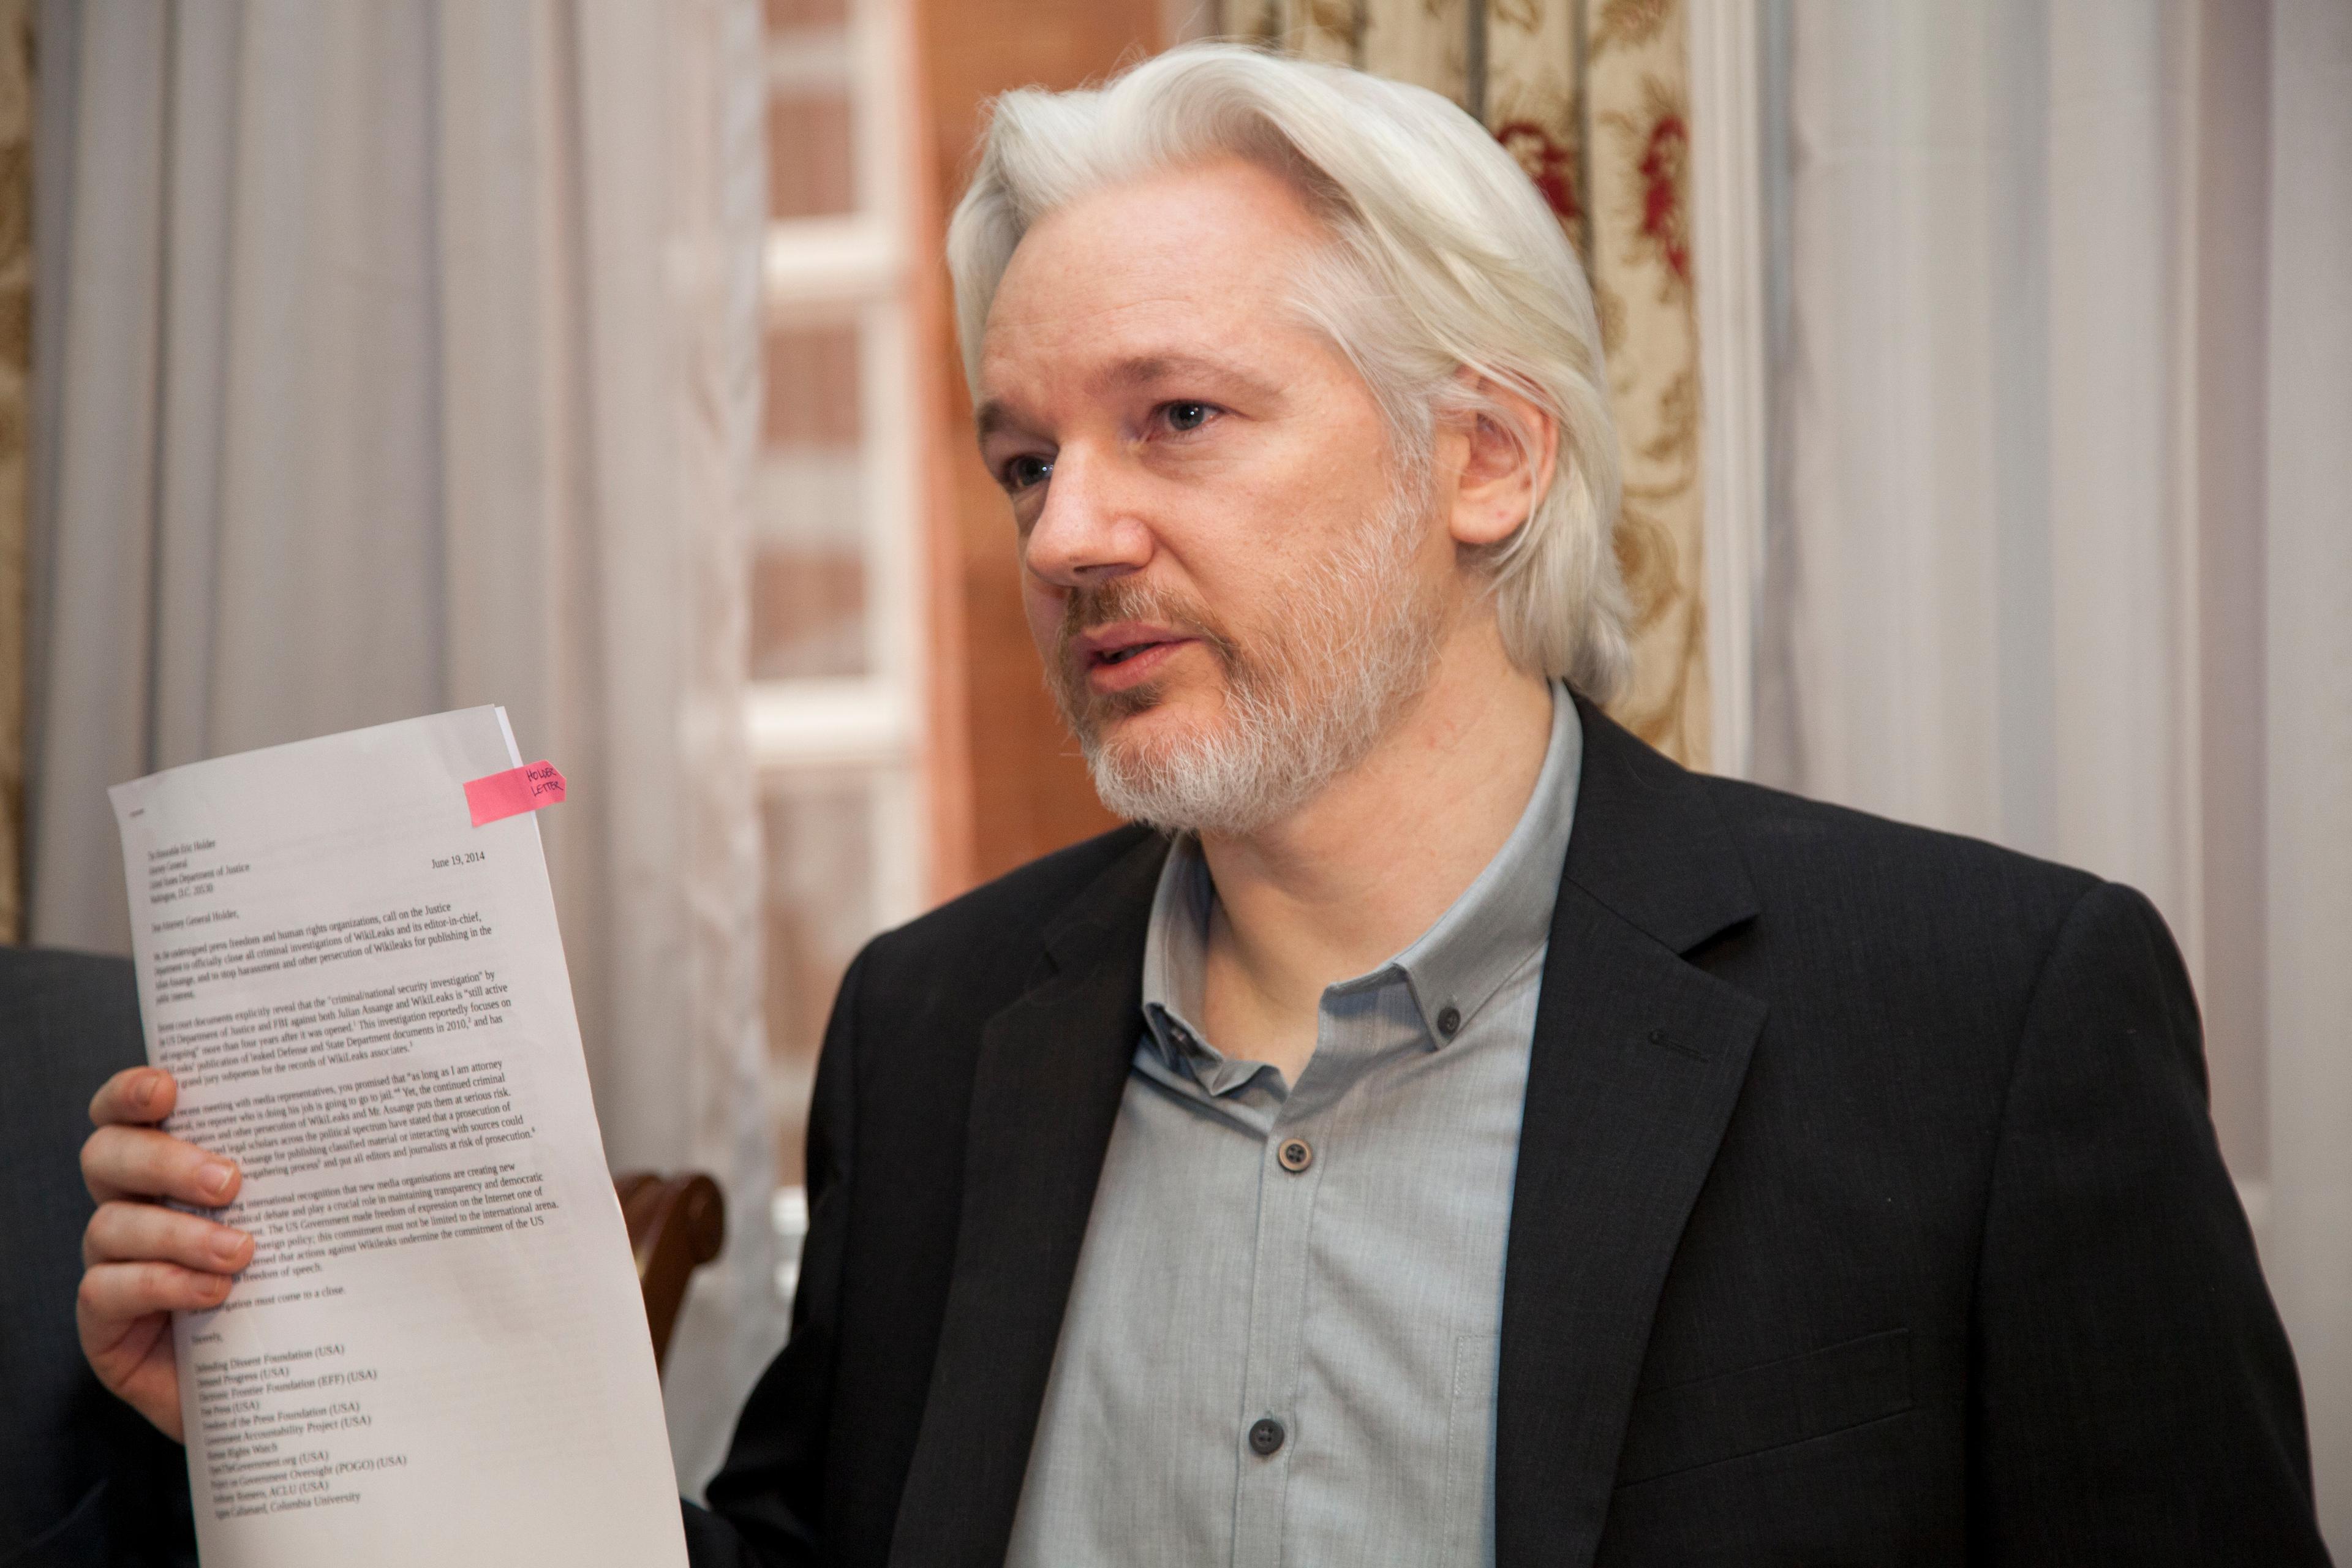 Solicita fiscalía de noruega la detención de Julian Assange por crímenes sexuales